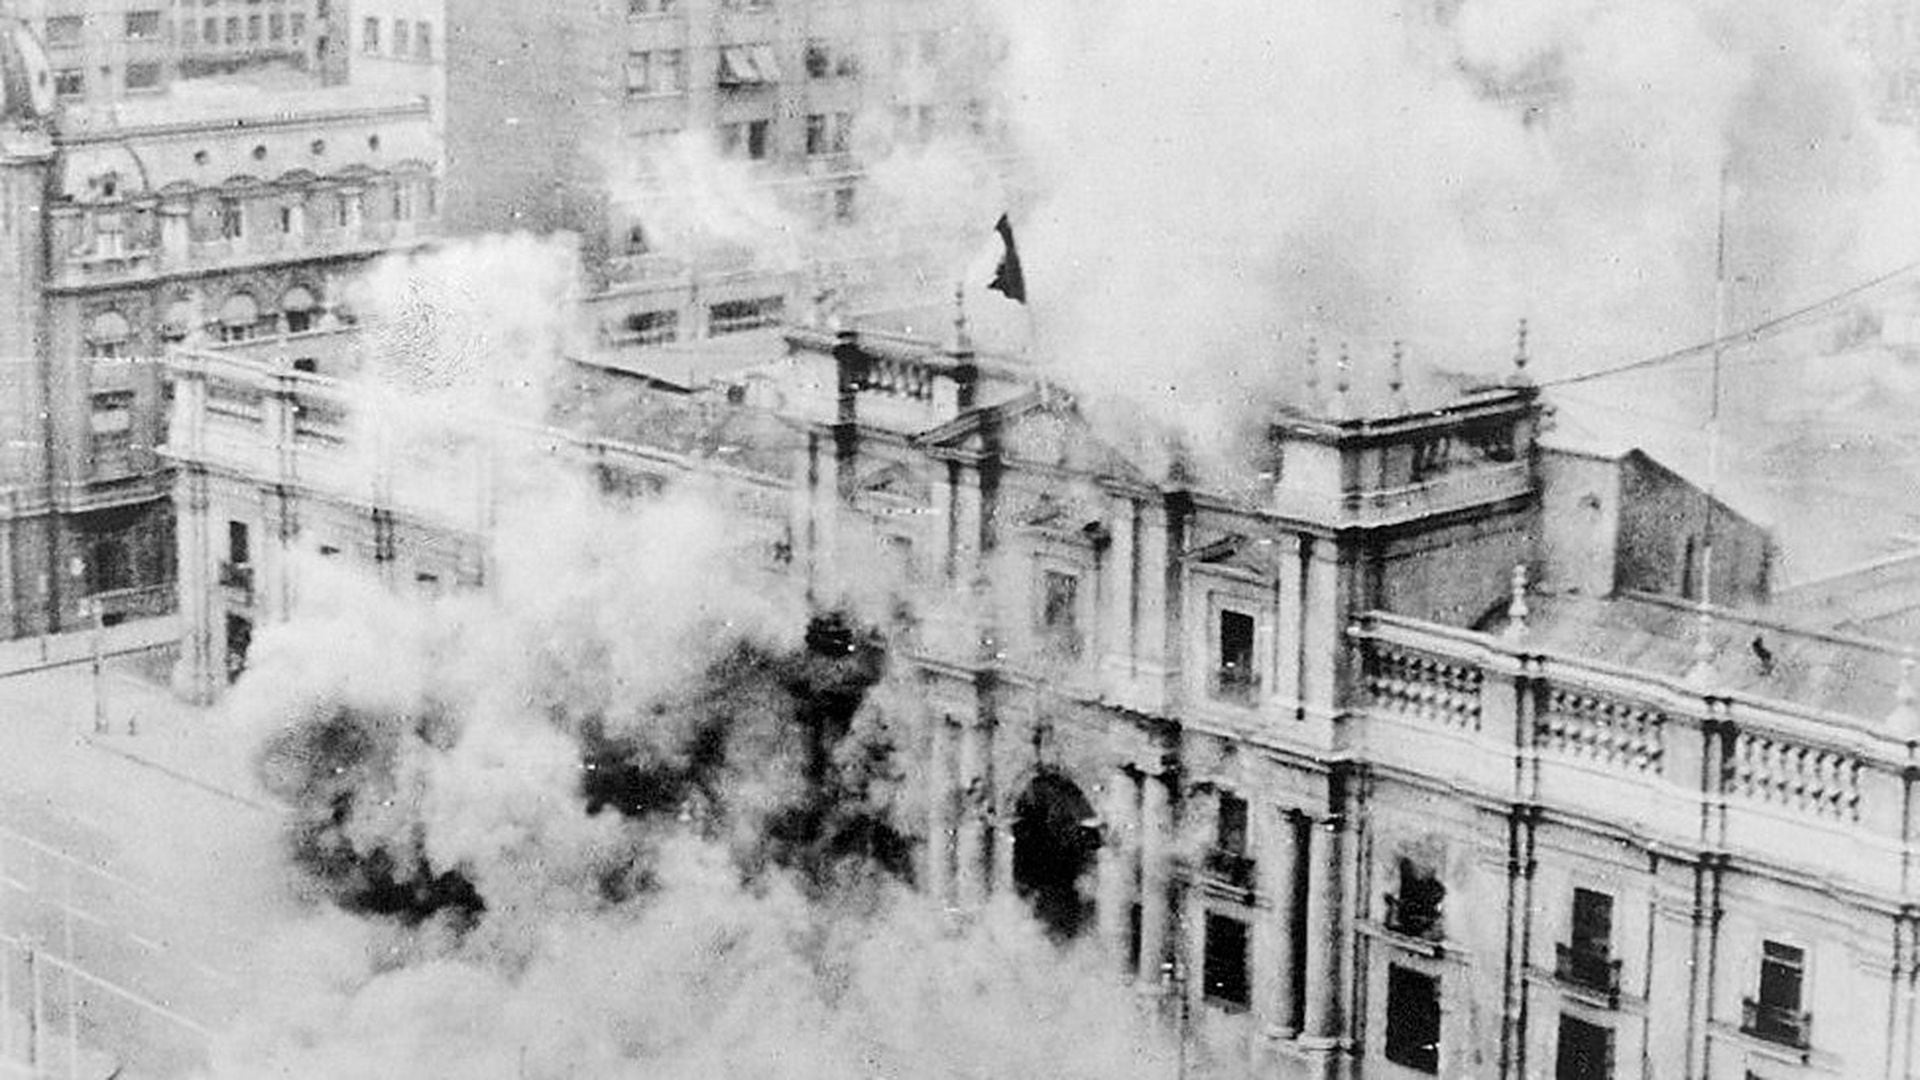 Los jefes militares ordenaron evacuar La Moneda y le rendición incondicional de Allende y sus seguidores